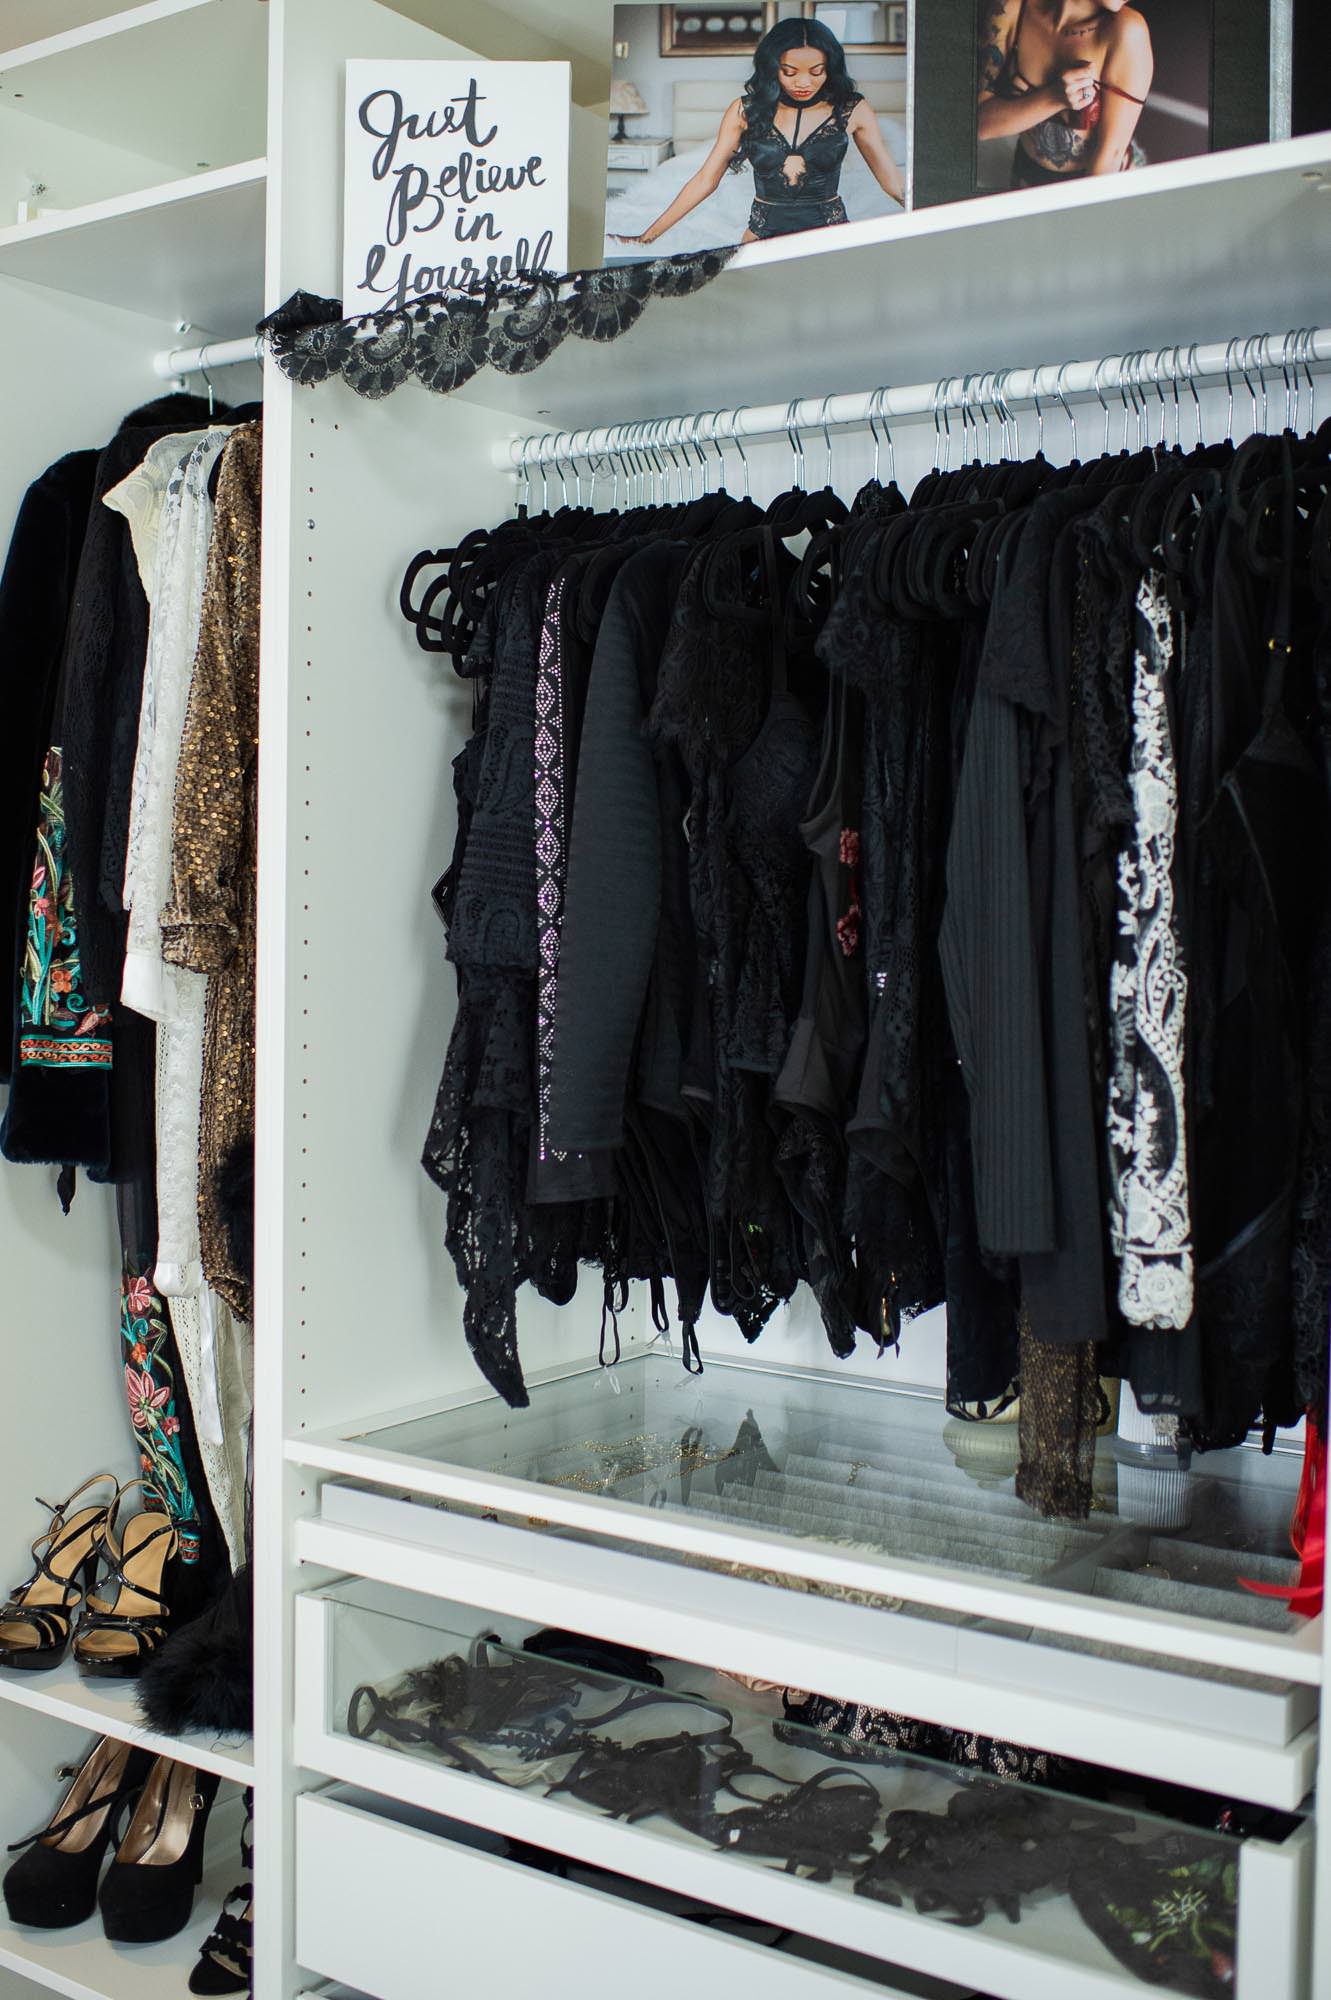 Black Lace Boudoir Studio Clothing and Lingerie.